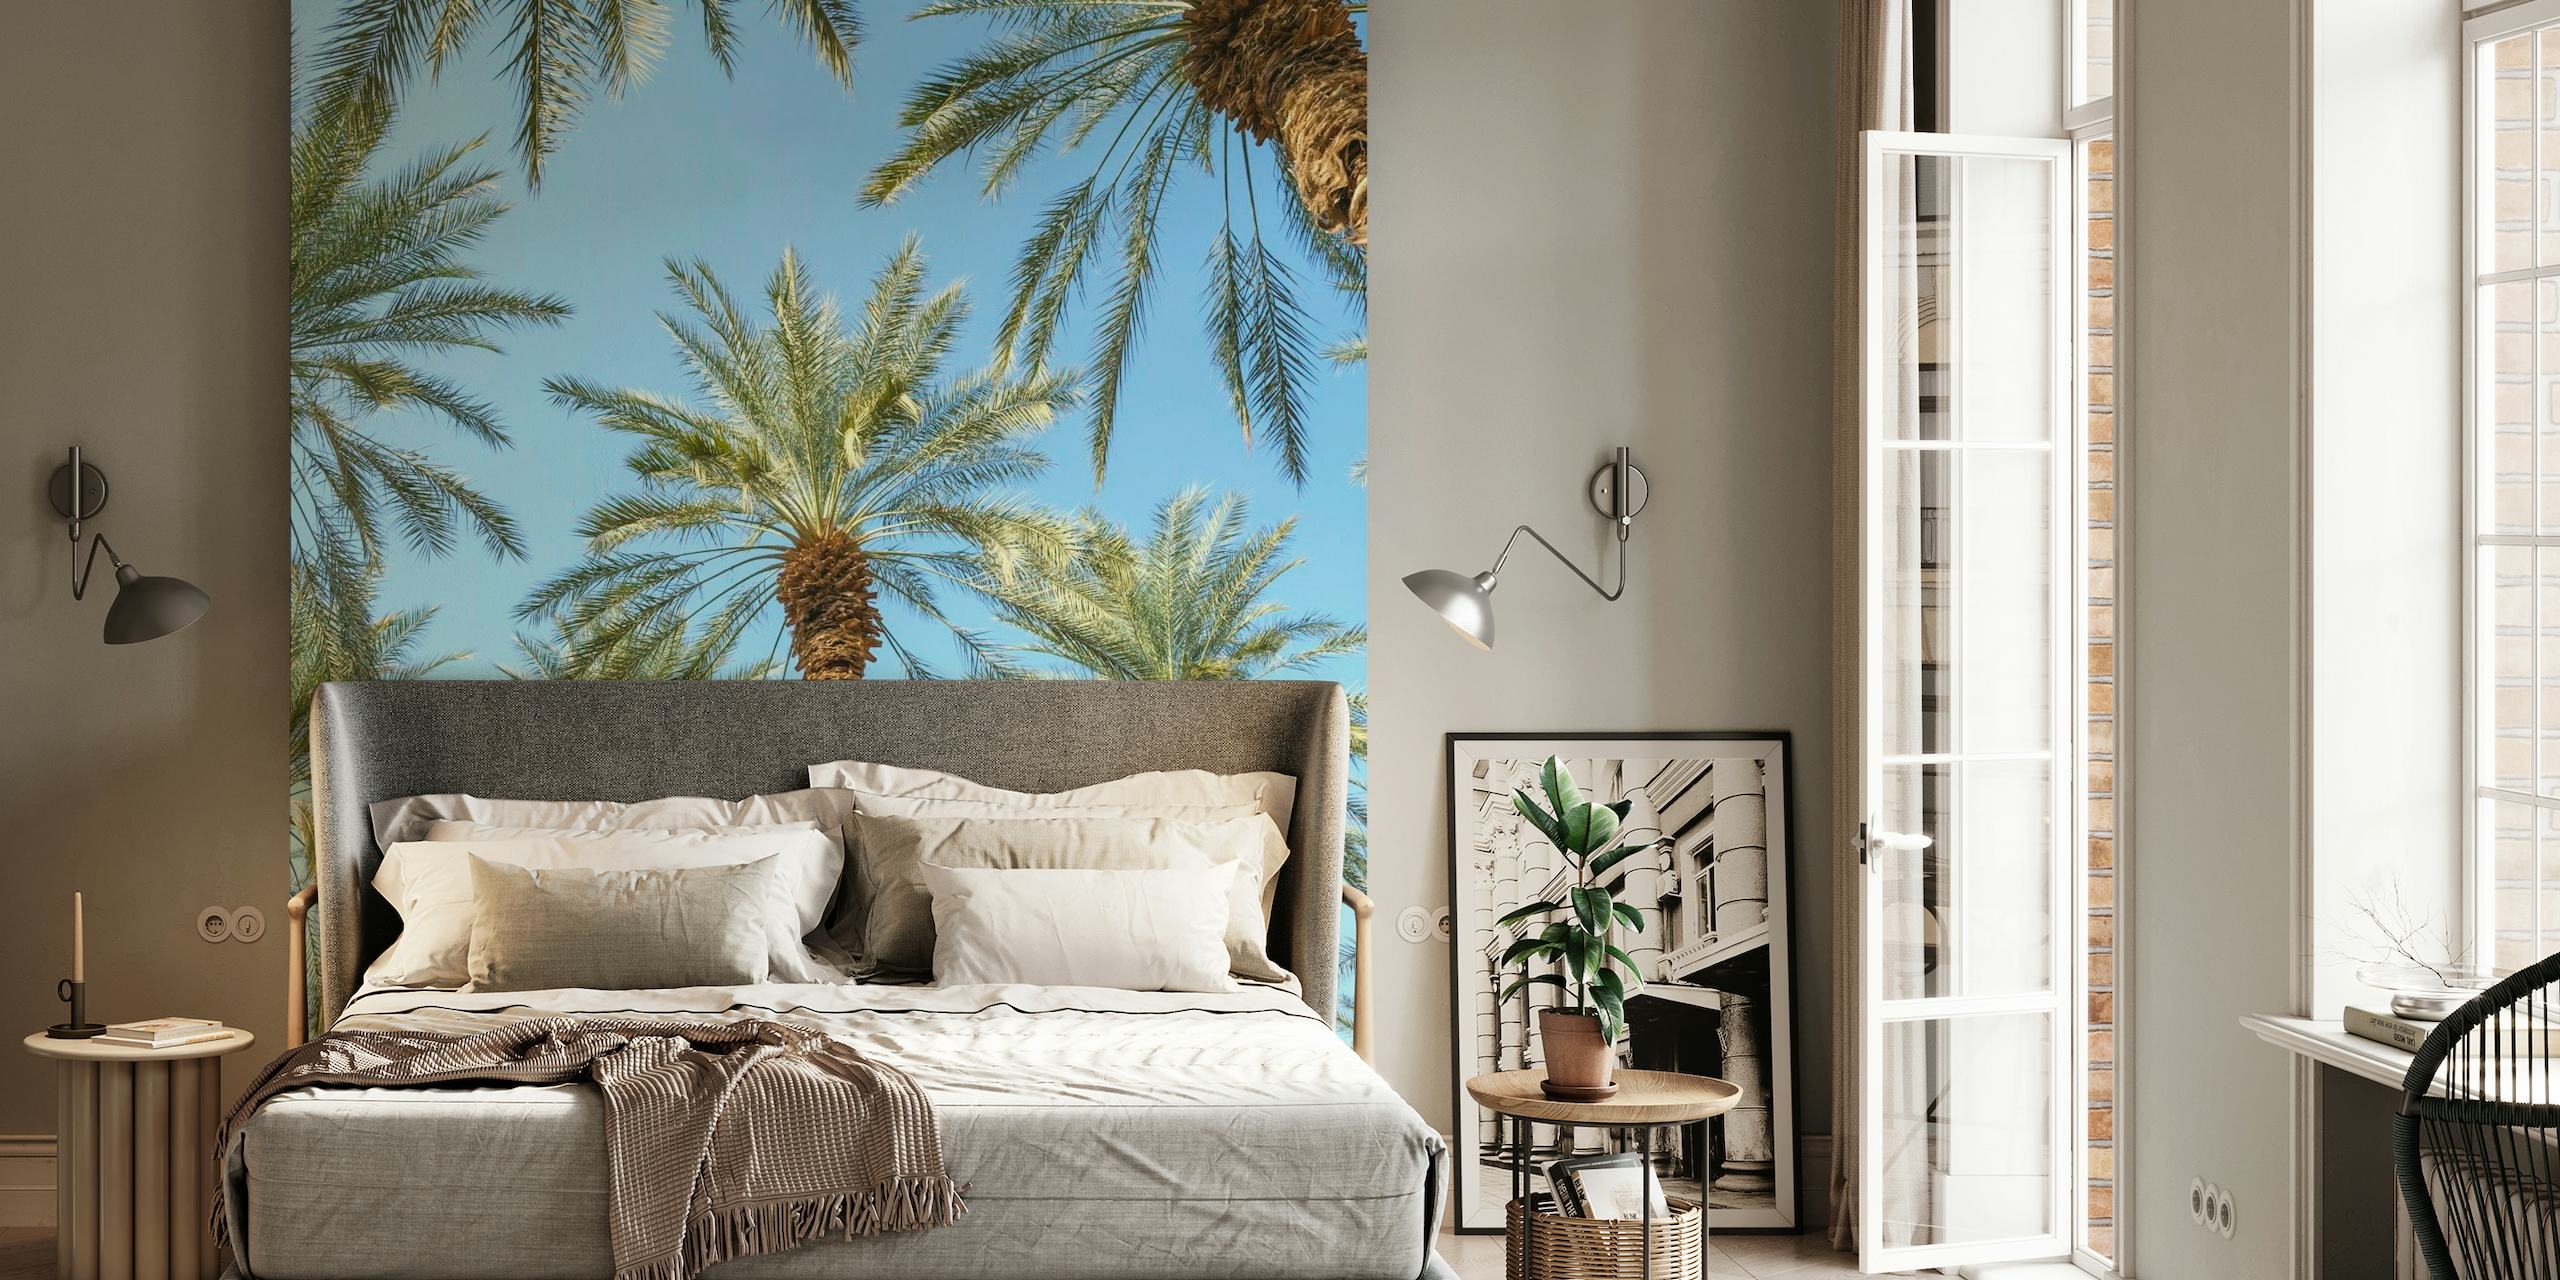 Papier peint mural de palmiers tropicaux pour une ambiance de décoration d'intérieur sereine.